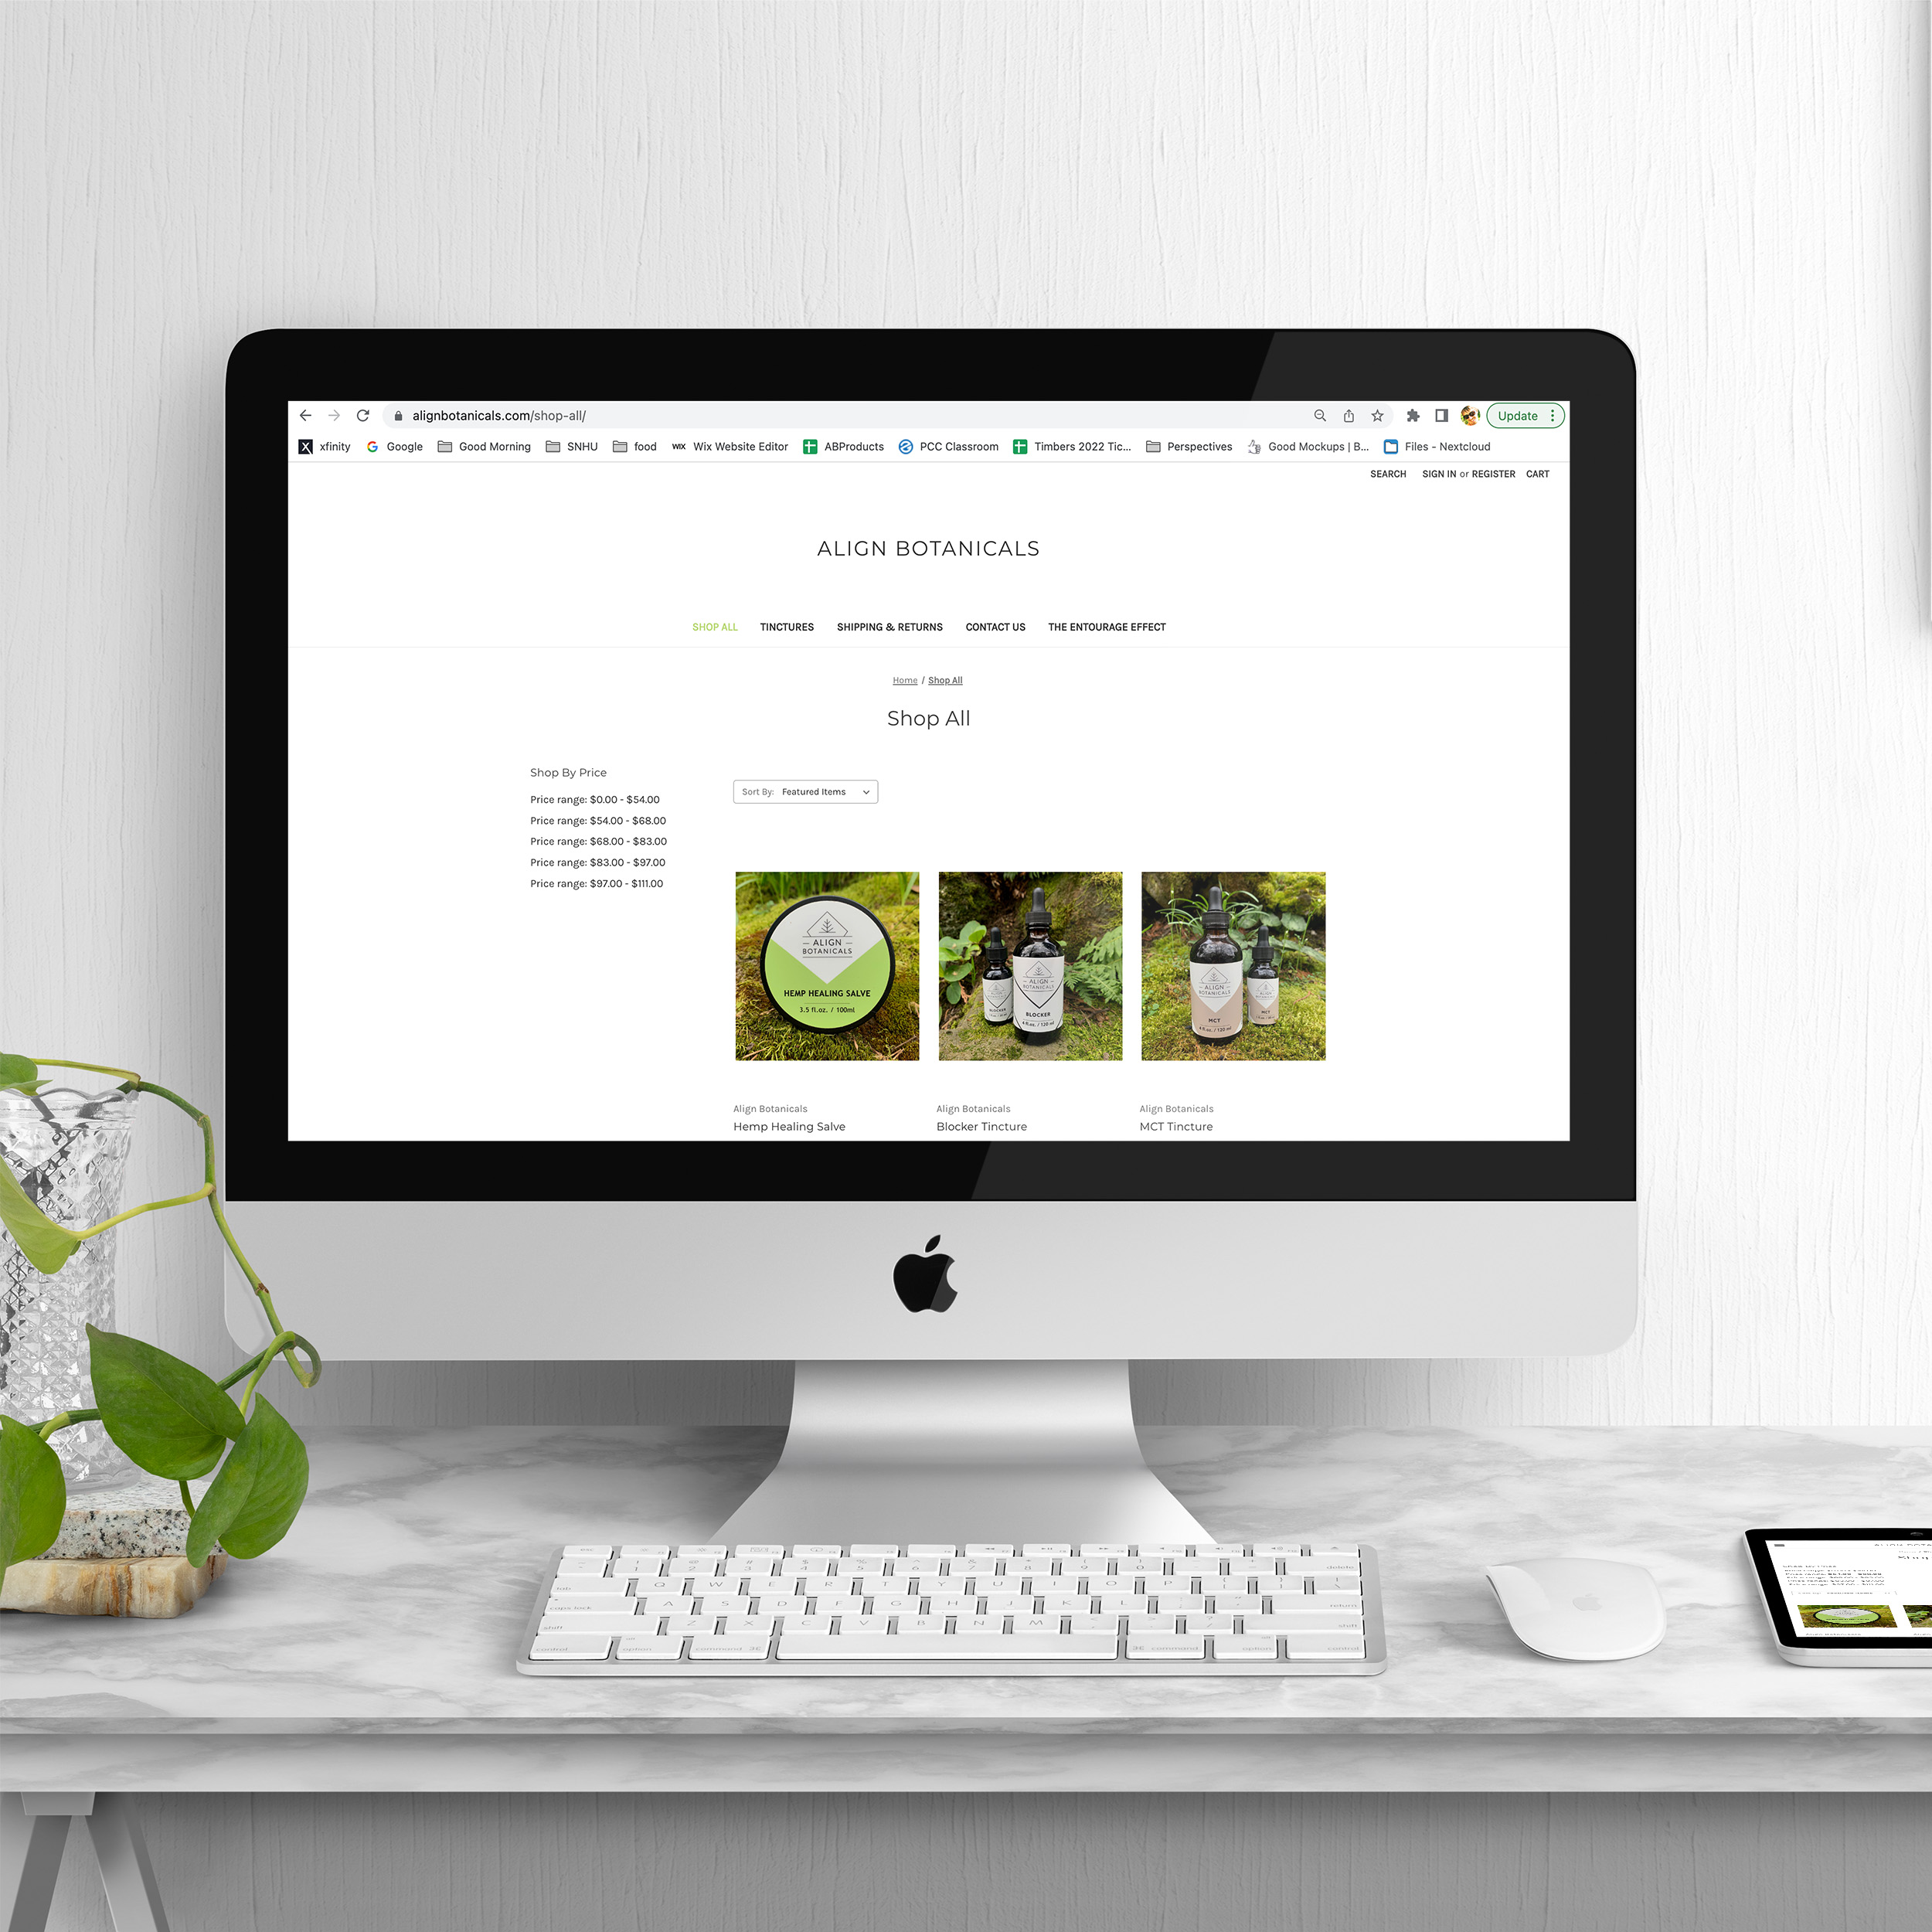 Align Botanicals website design mockup